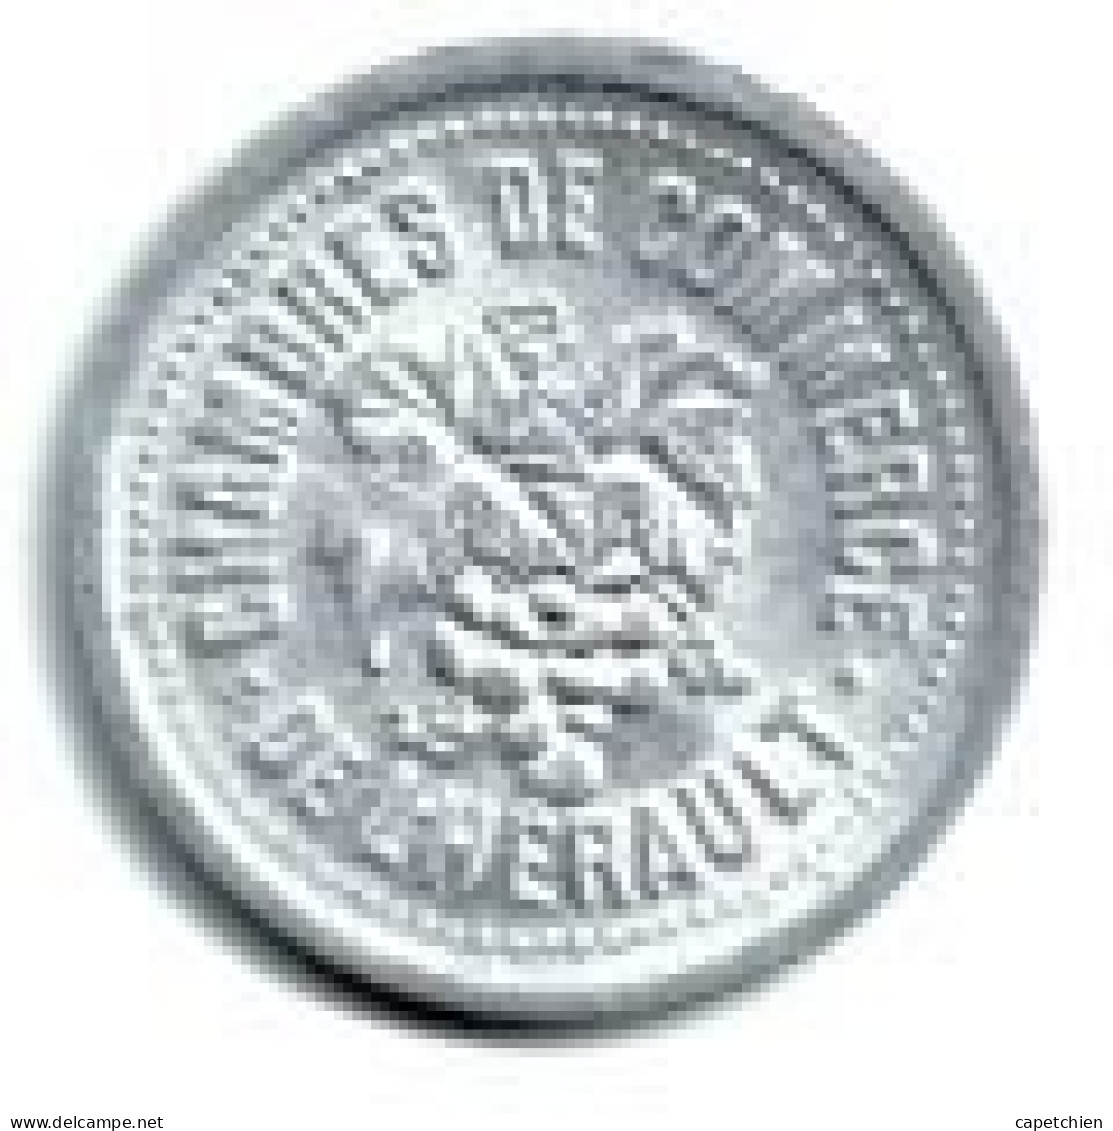 FRANCE / NECESSITE / UNION LATINE / CHAMBRES DE COMMERCE DE L'HERAULT  / 1921 - 1924 /  5 CENT  / ALU / 1.10 G / 21 Mm - Monétaires / De Nécessité